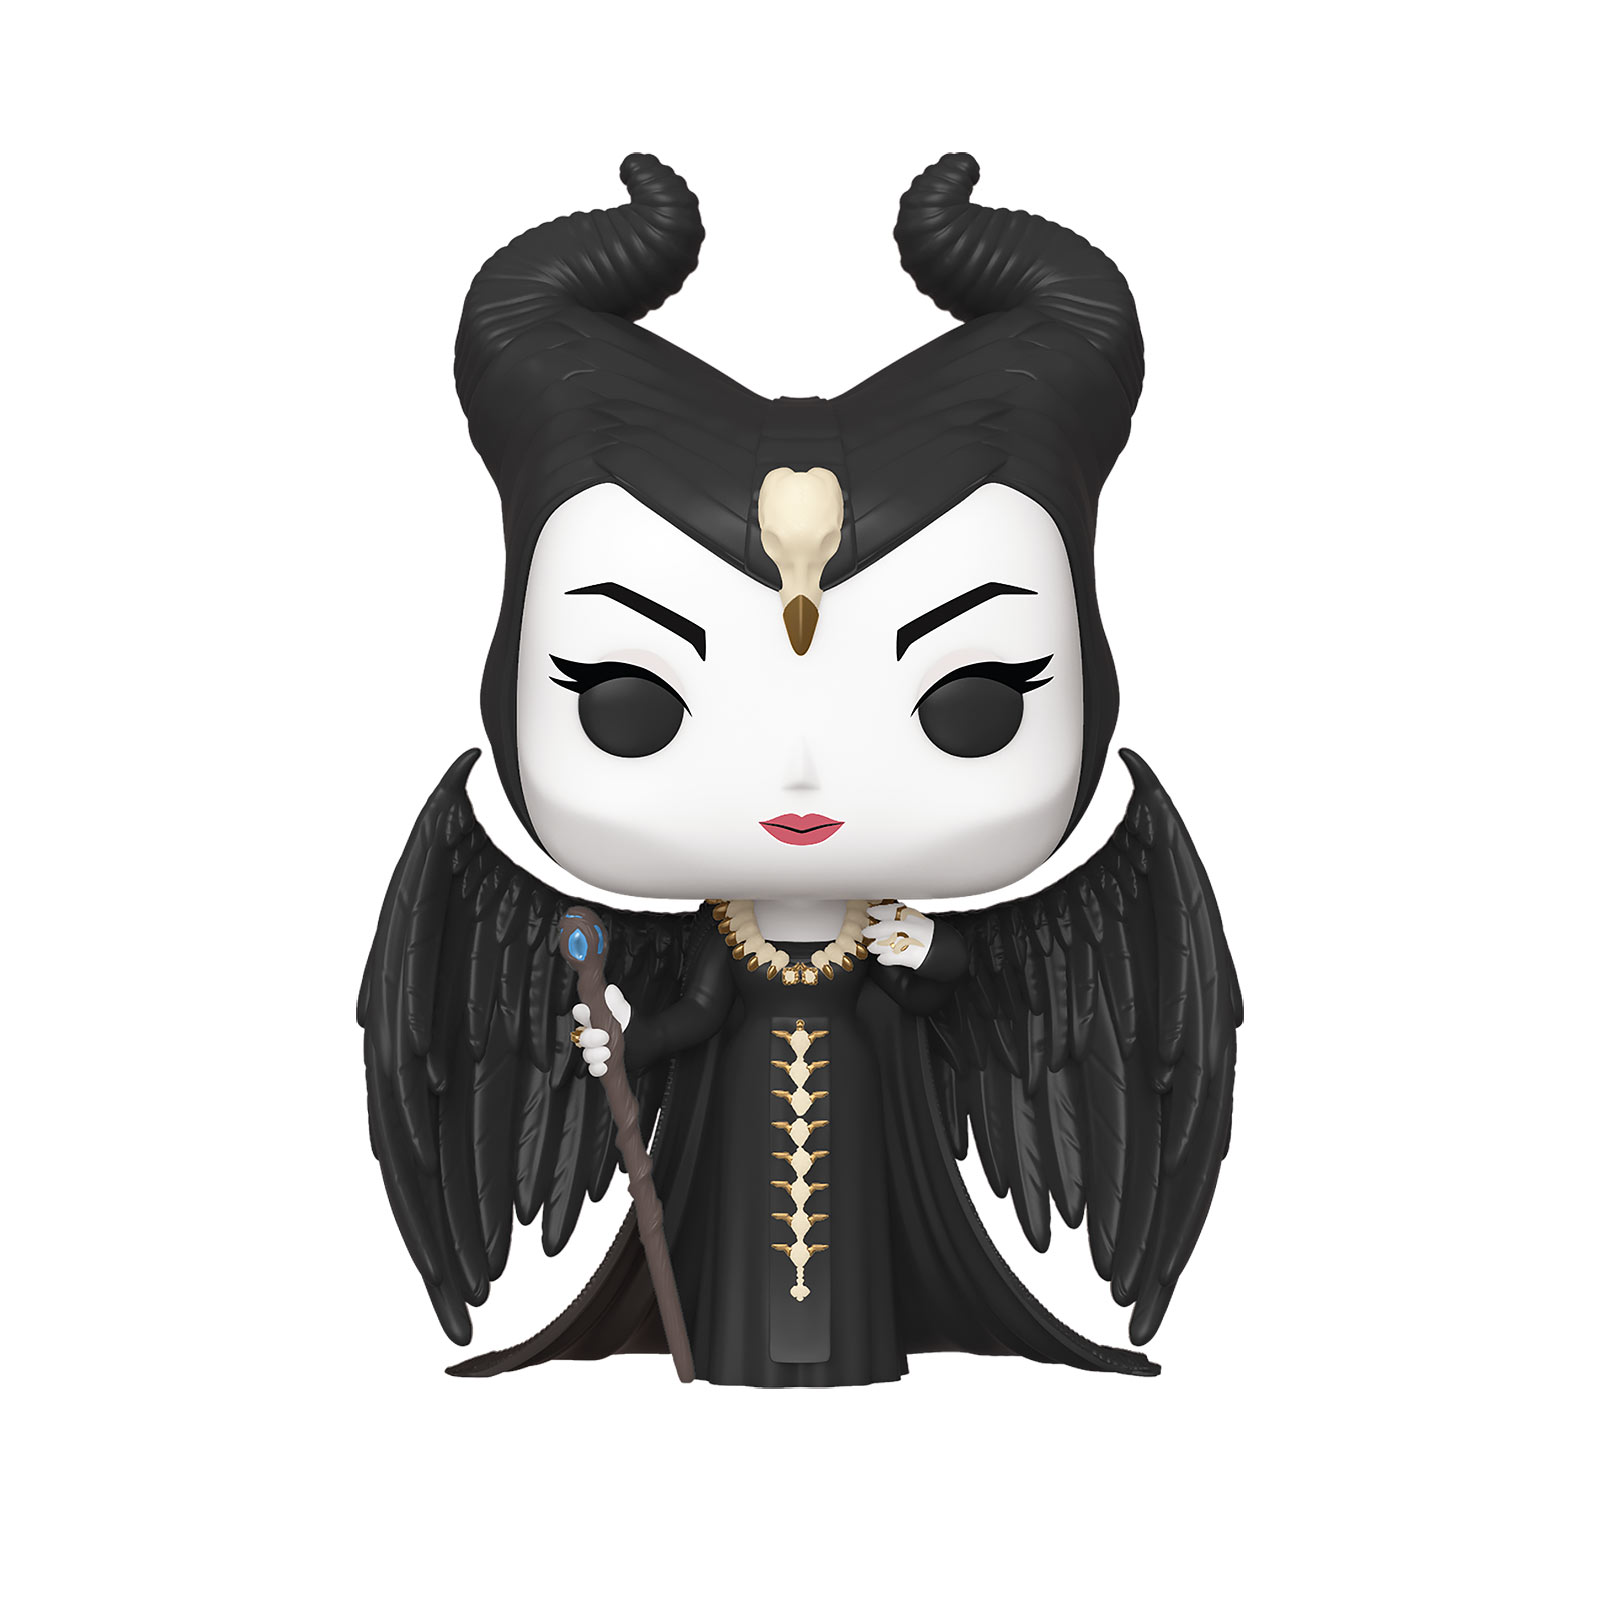 Maleficent - Mistress of Evil Funko Pop Figure